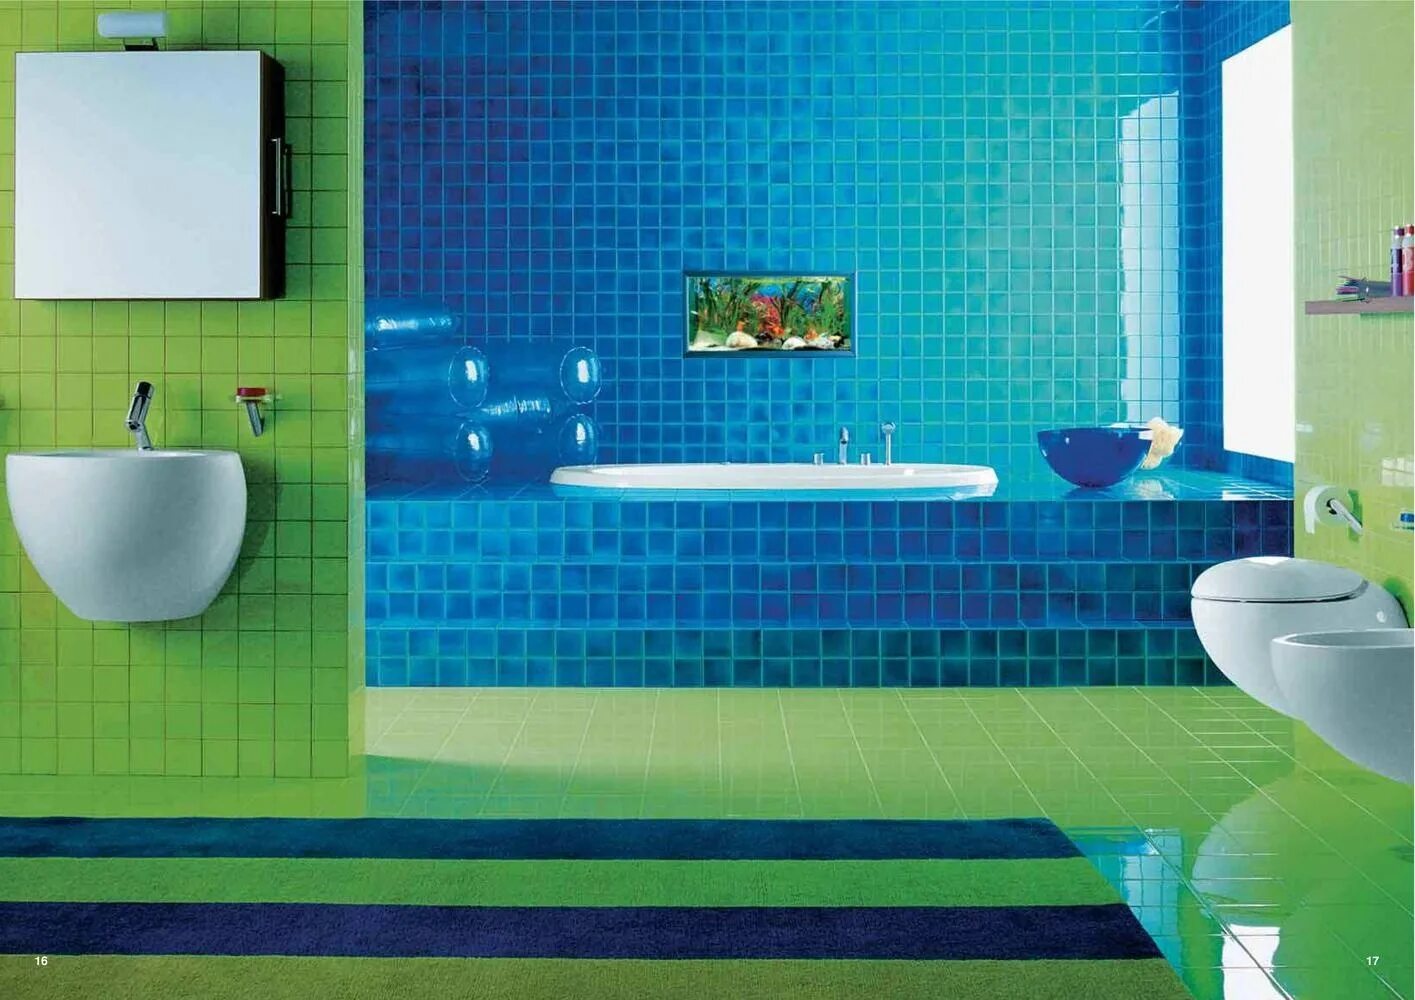 Зеленая ванна купить. Яркая плитка для ванной комнаты. Цветная ванна в интерьере. Ванная в салатовом цвете. Сочетание цветов плитки в ванной комнате.